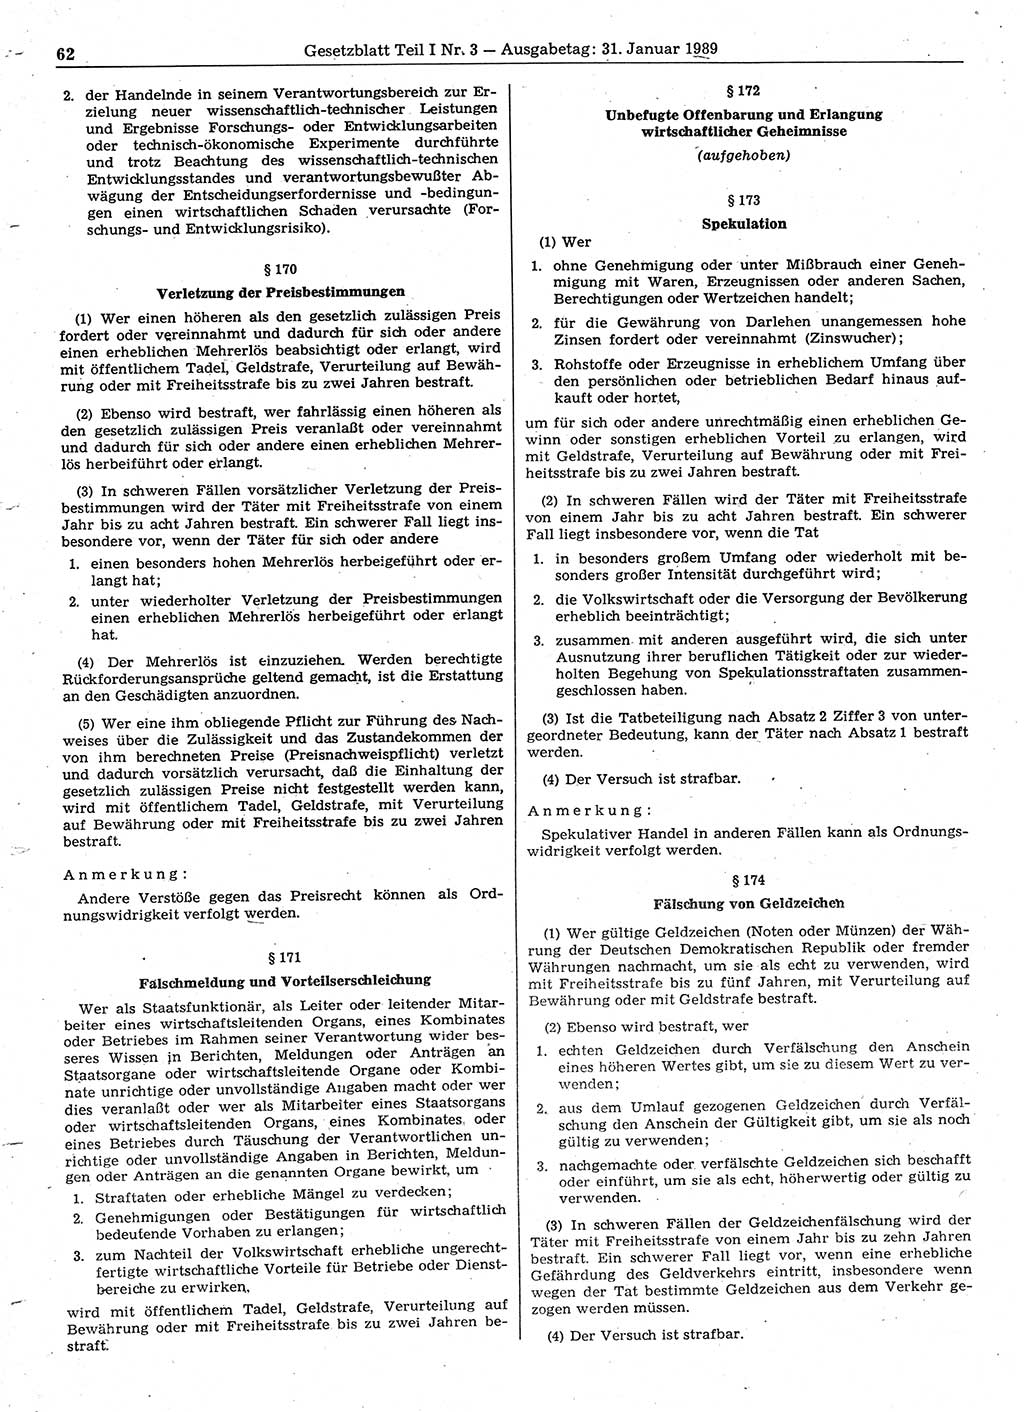 Gesetzblatt (GBl.) der Deutschen Demokratischen Republik (DDR) Teil Ⅰ 1989, Seite 62 (GBl. DDR Ⅰ 1989, S. 62)